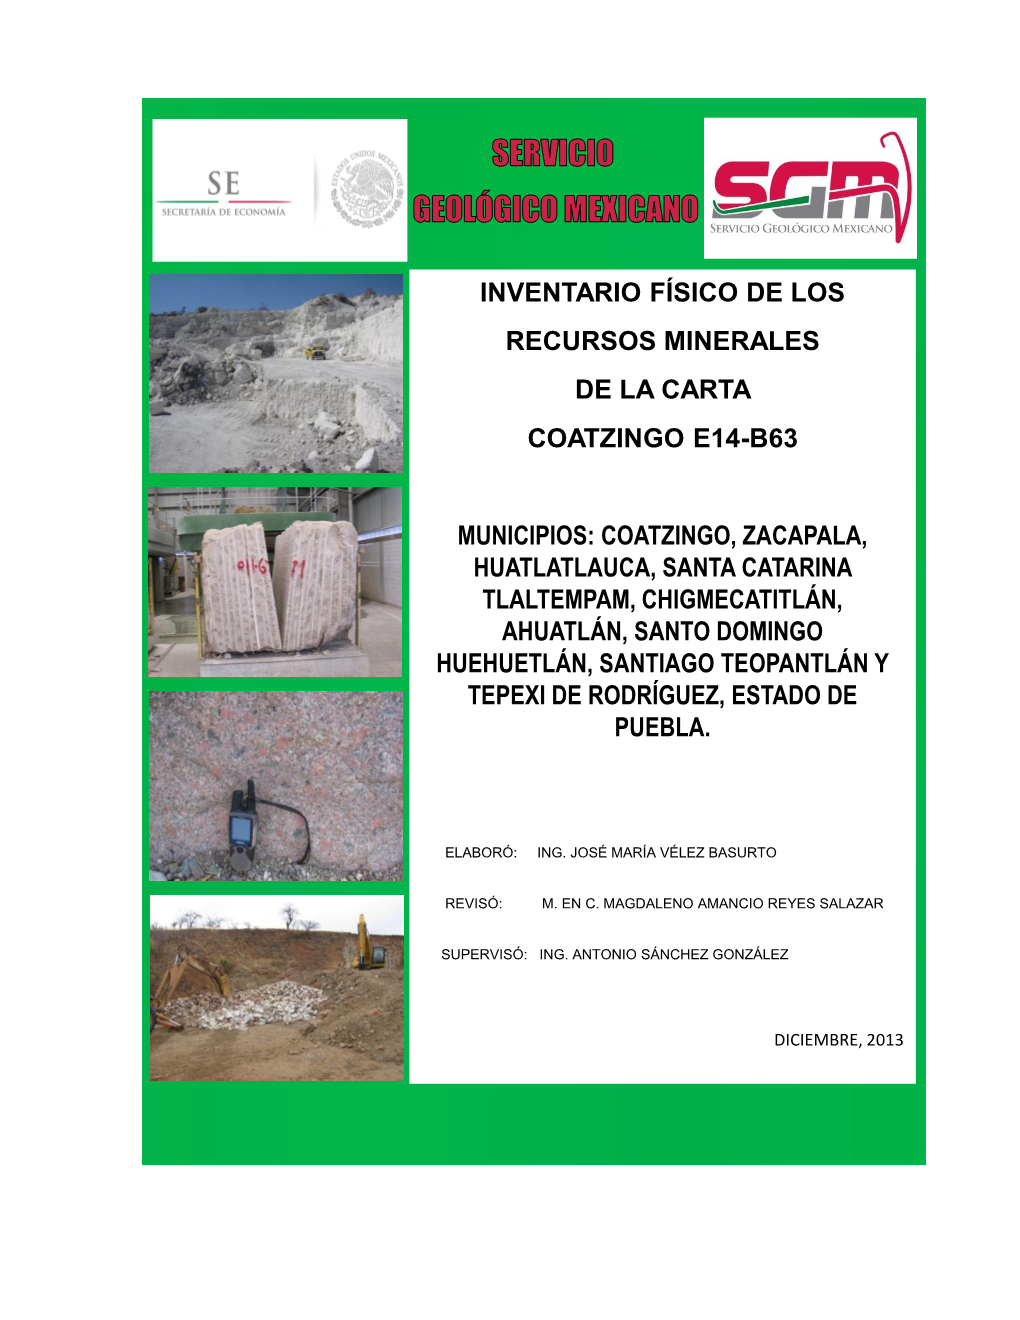 Inventario Físico De Los Recursos Minerales Coatzingo E14-B63, Escala 1:50,000 (Al Final Del Texto)